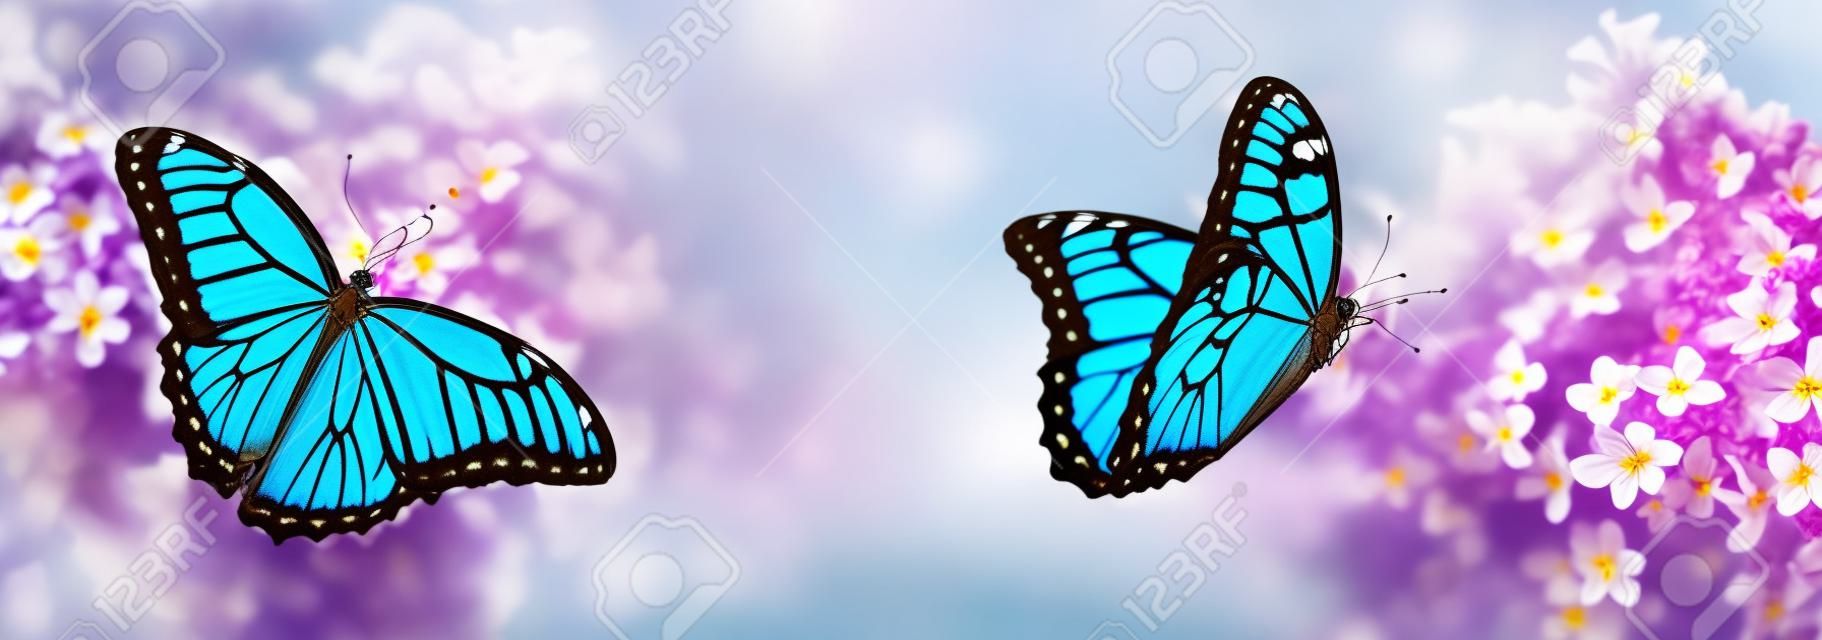 Incredibili farfalle morpho comuni su fiori lilla in giardino, banner design